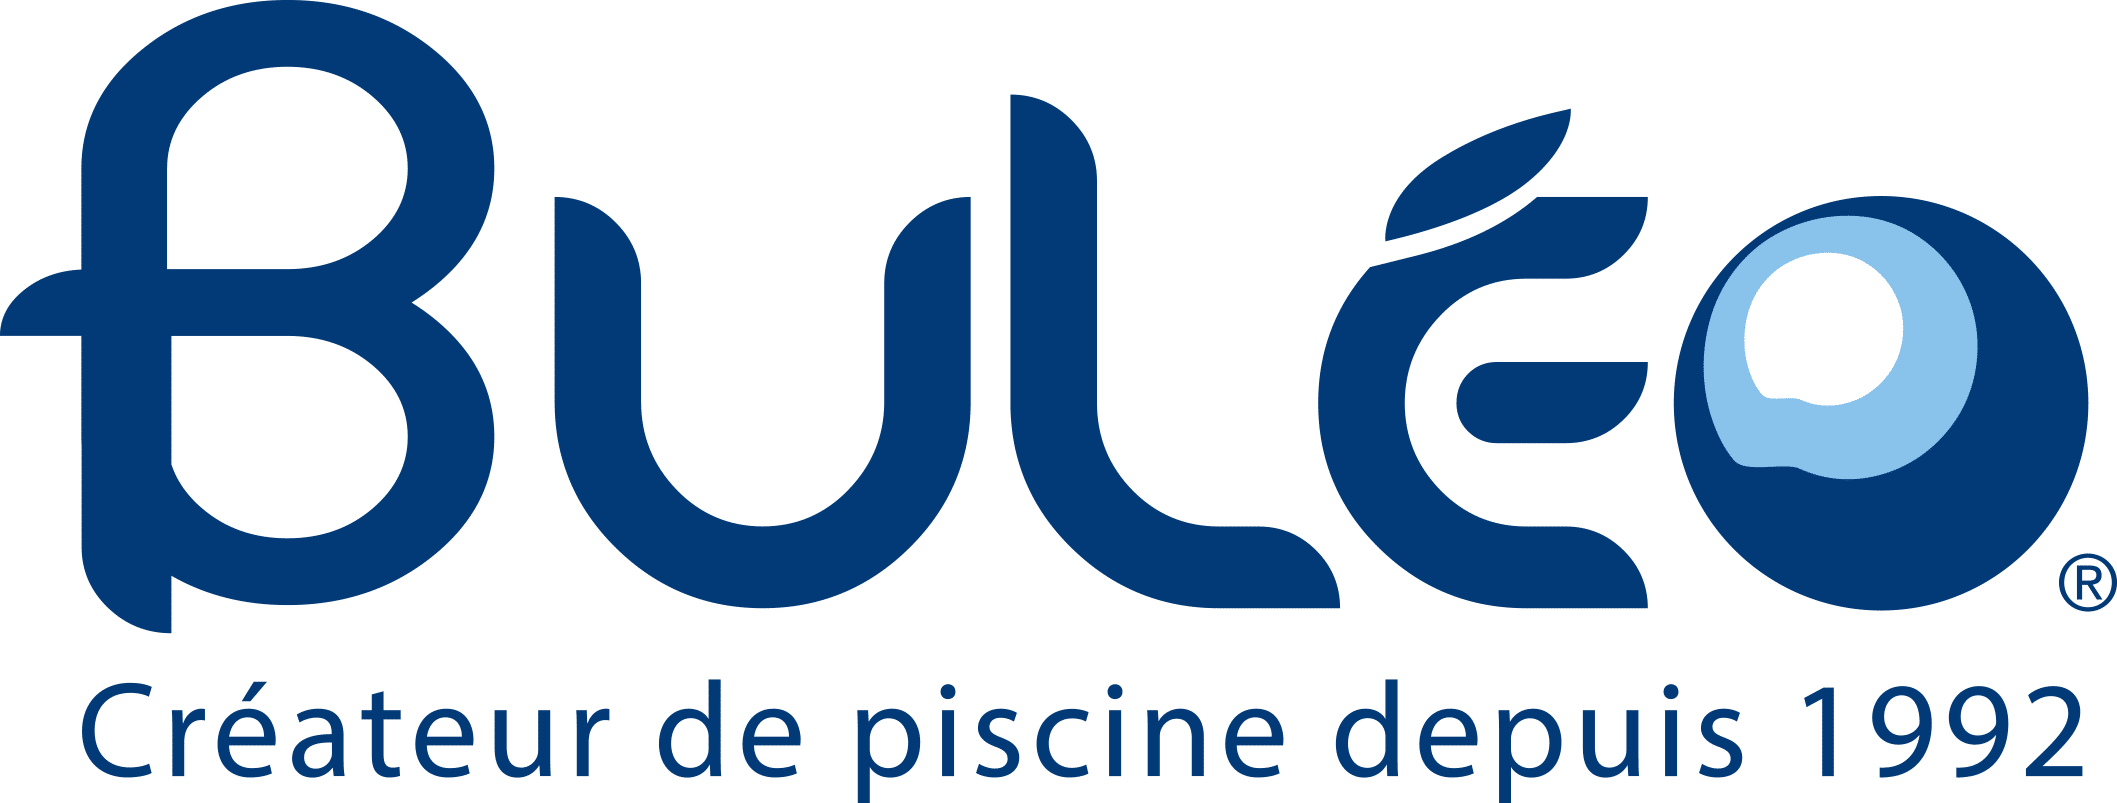 Logo-Buleo-Bleu